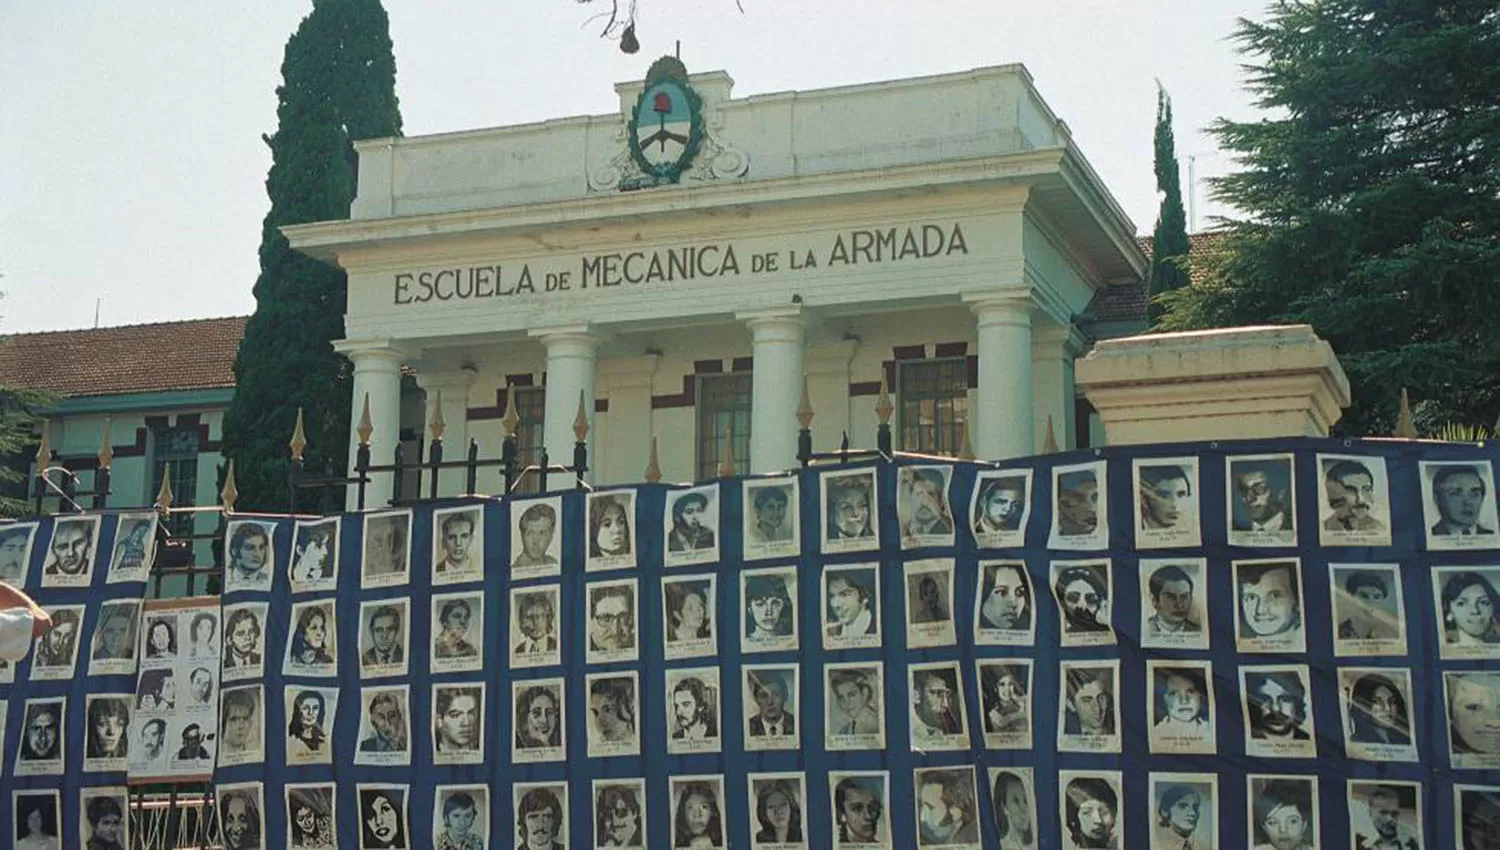 Scilingo dijo que militares españoles enseñaron a torturar a los argentinos en la ESMA